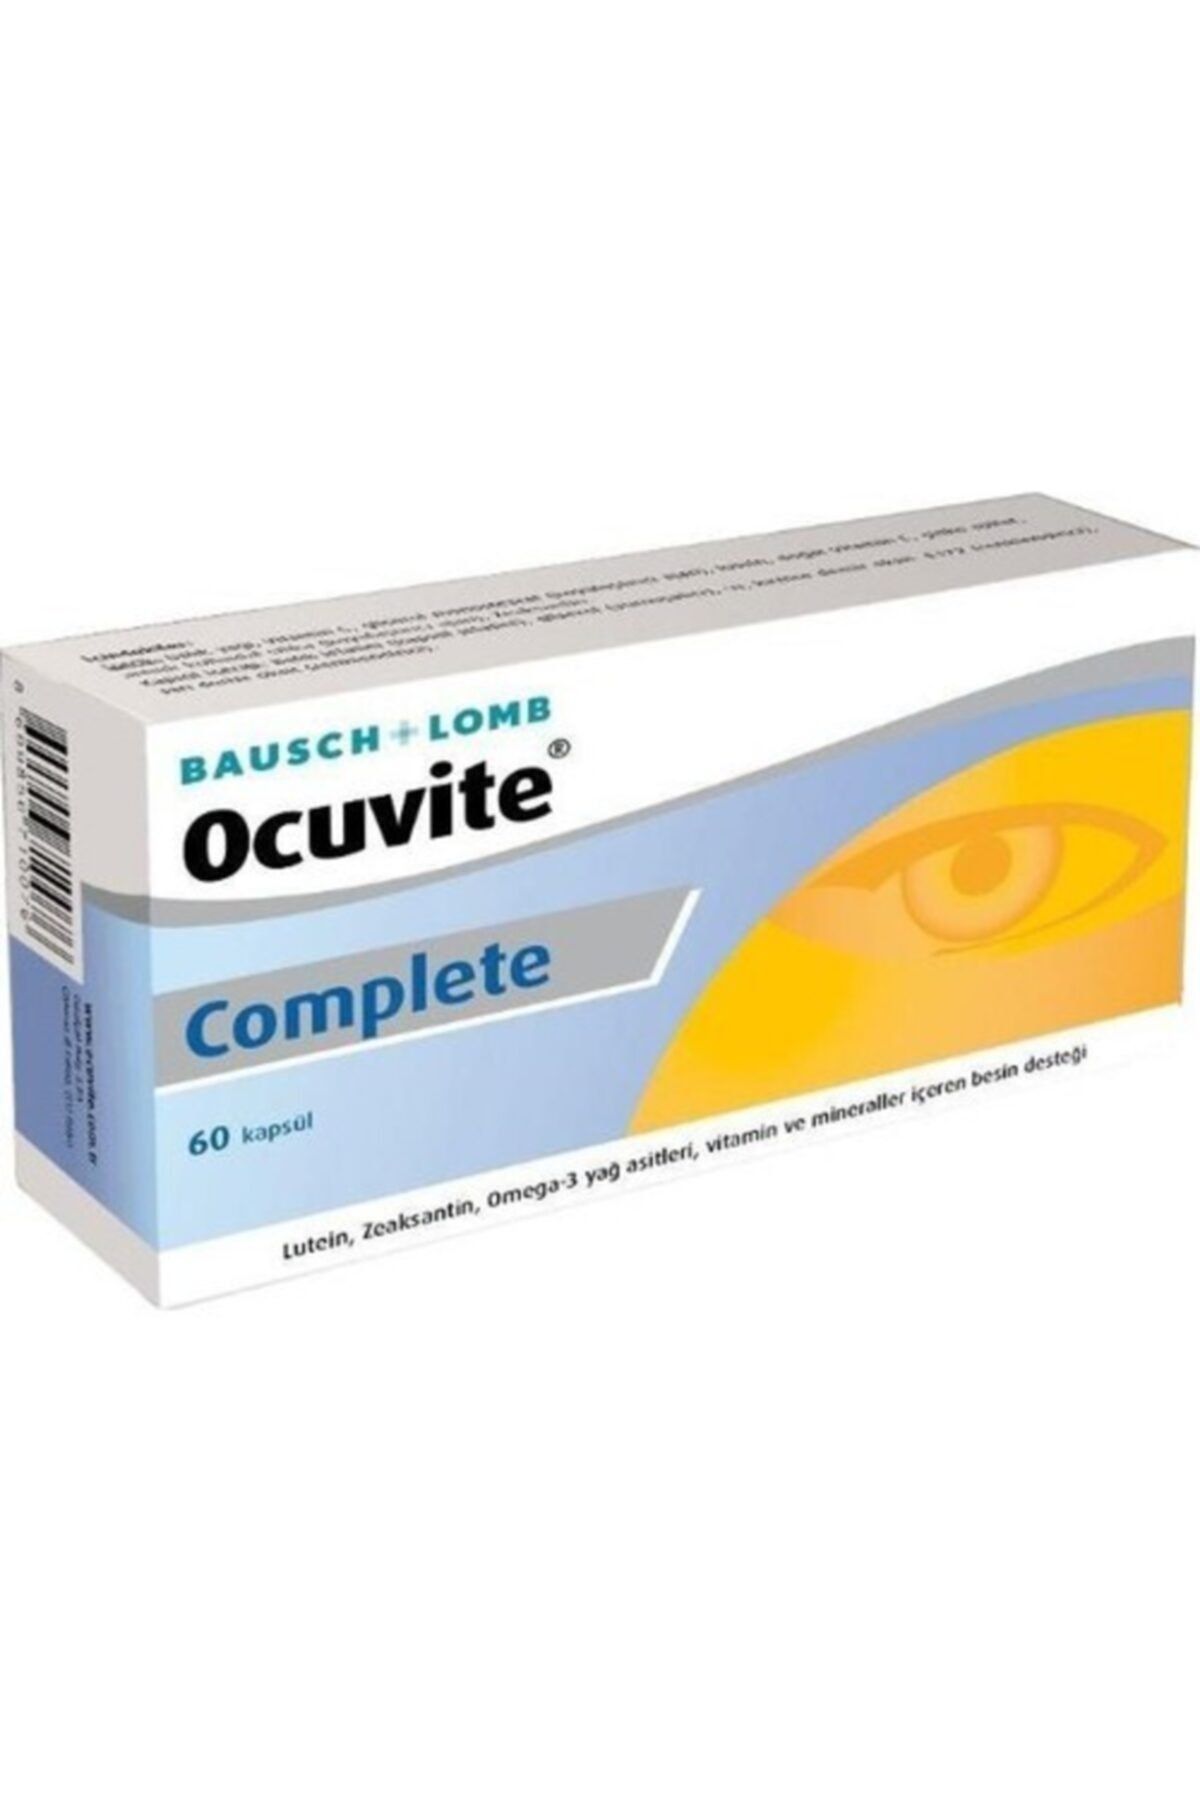 Bausch & Lomb Ocuvite Complete 60 Kapsül